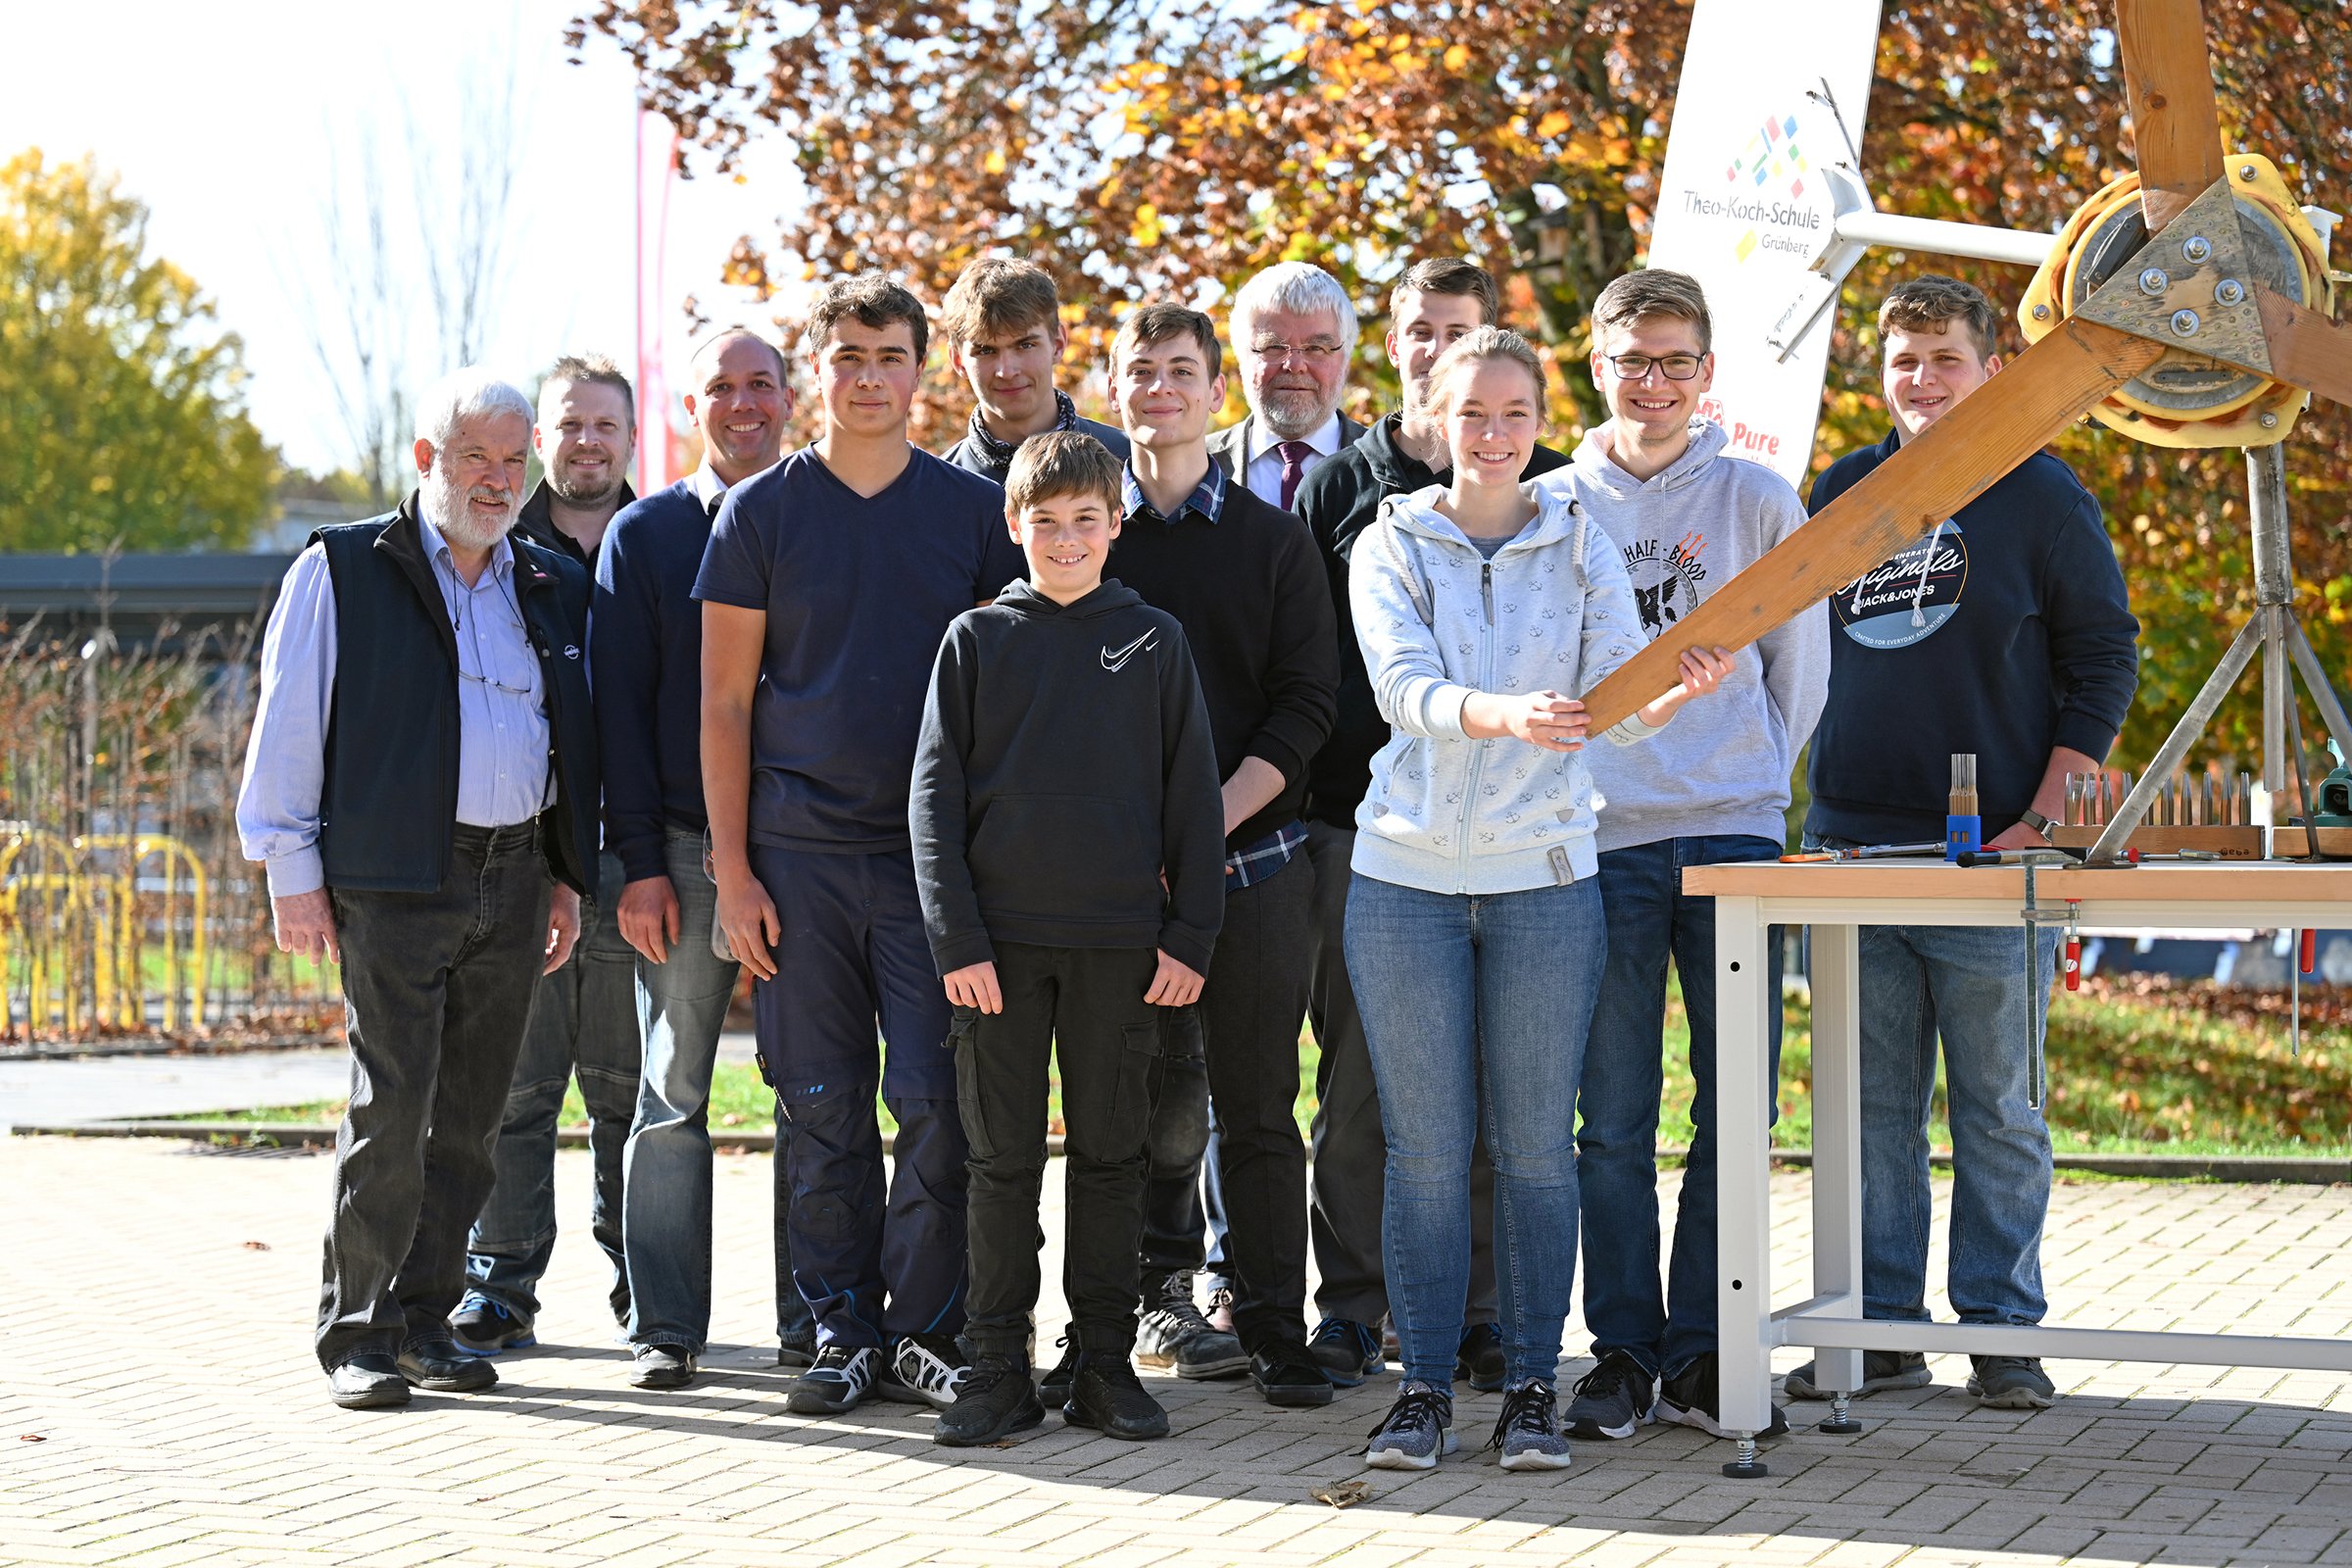 Schulprojekt Energie, Nachhaltigkeit und Mobilität - Theo-Koch-Schule Grünberg